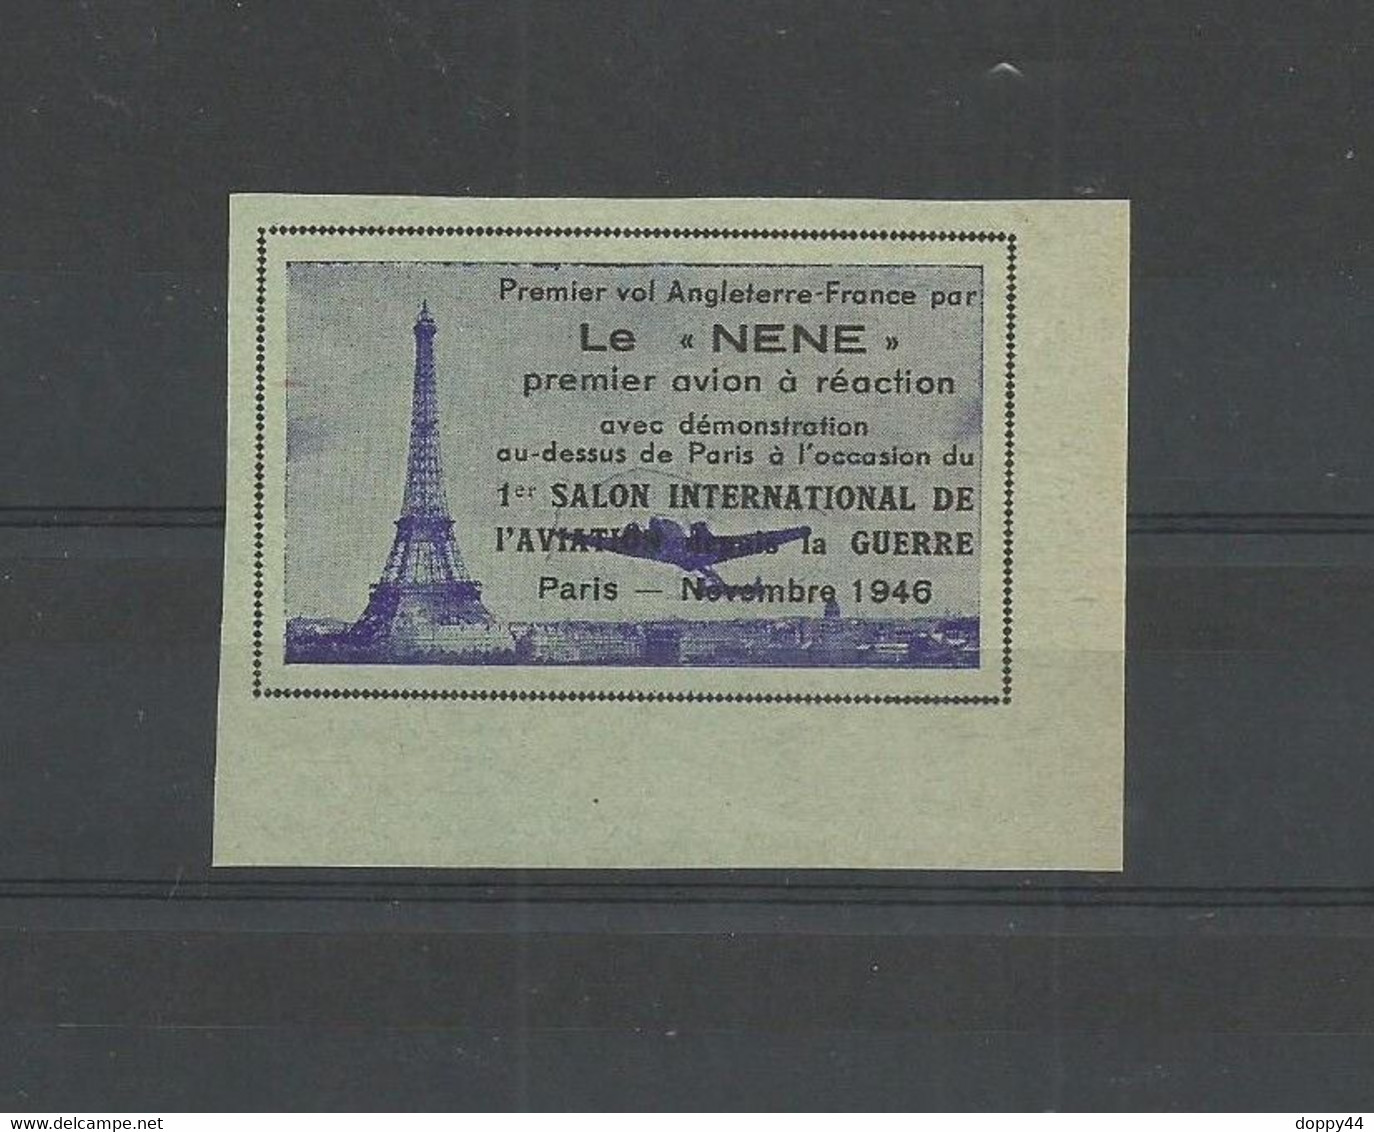 VIGNETTE AVIATION PREMIER VOL FRANCE ANGLETERRE PAR LE "NENE" A L'OCCASION DU SALON PARIS NOVEMBRE 1945. - Aviazione